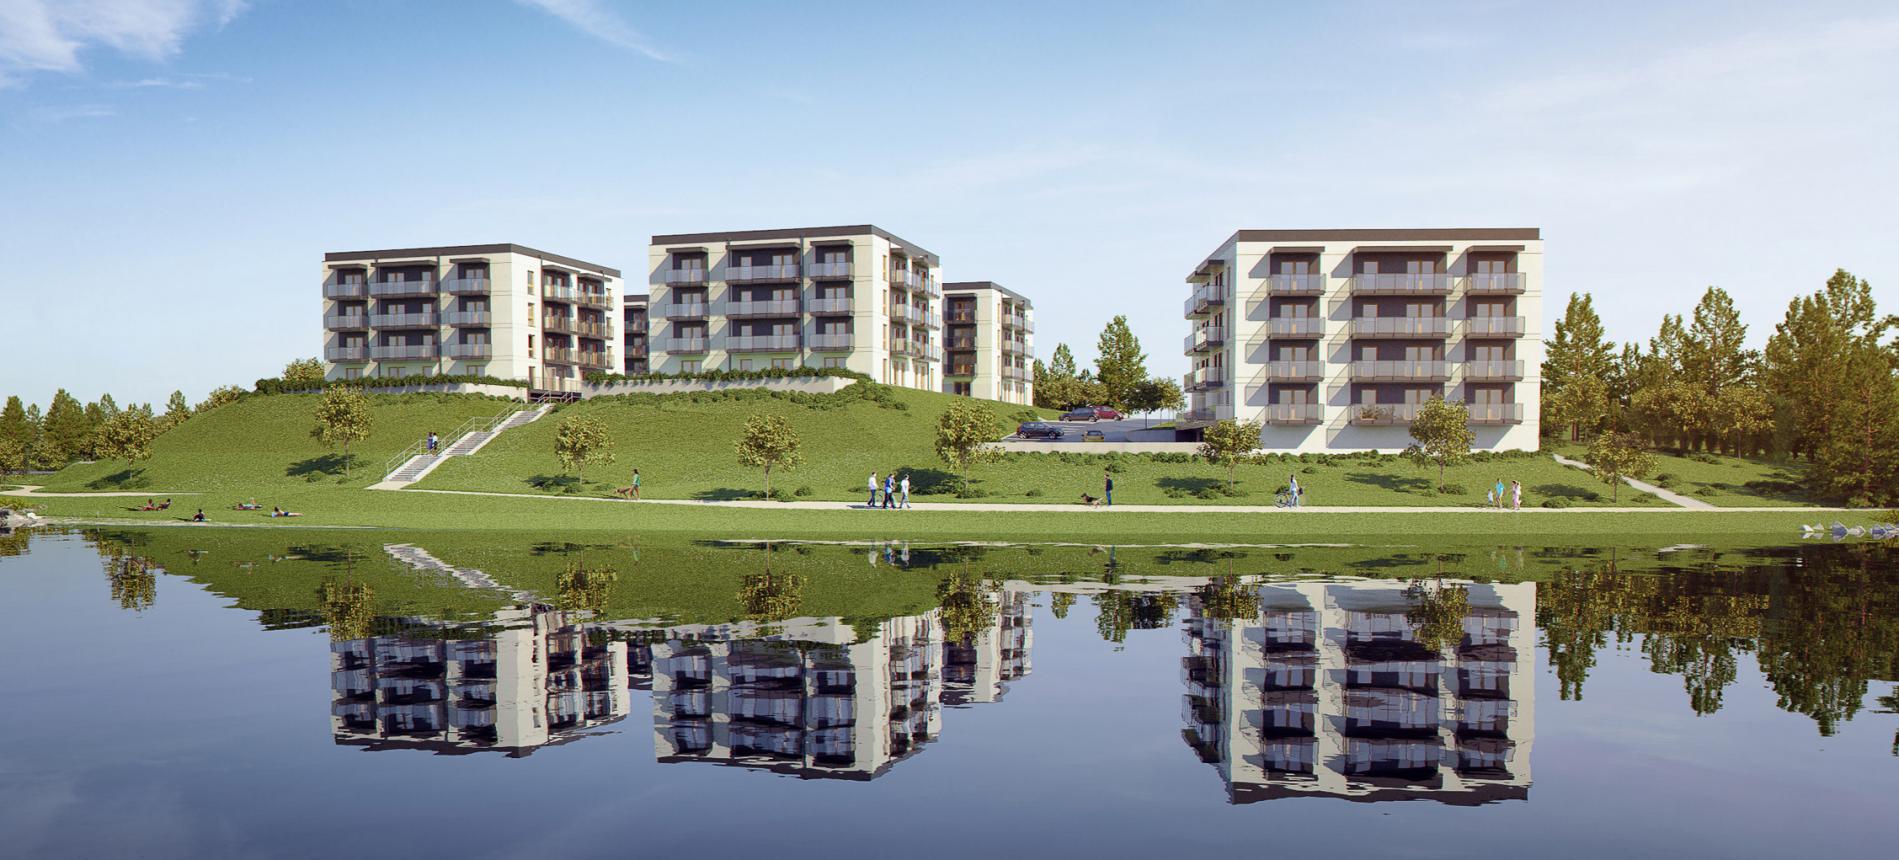 Nowe mieszkania w Wałczu - zamieszkaj nad jeziorem